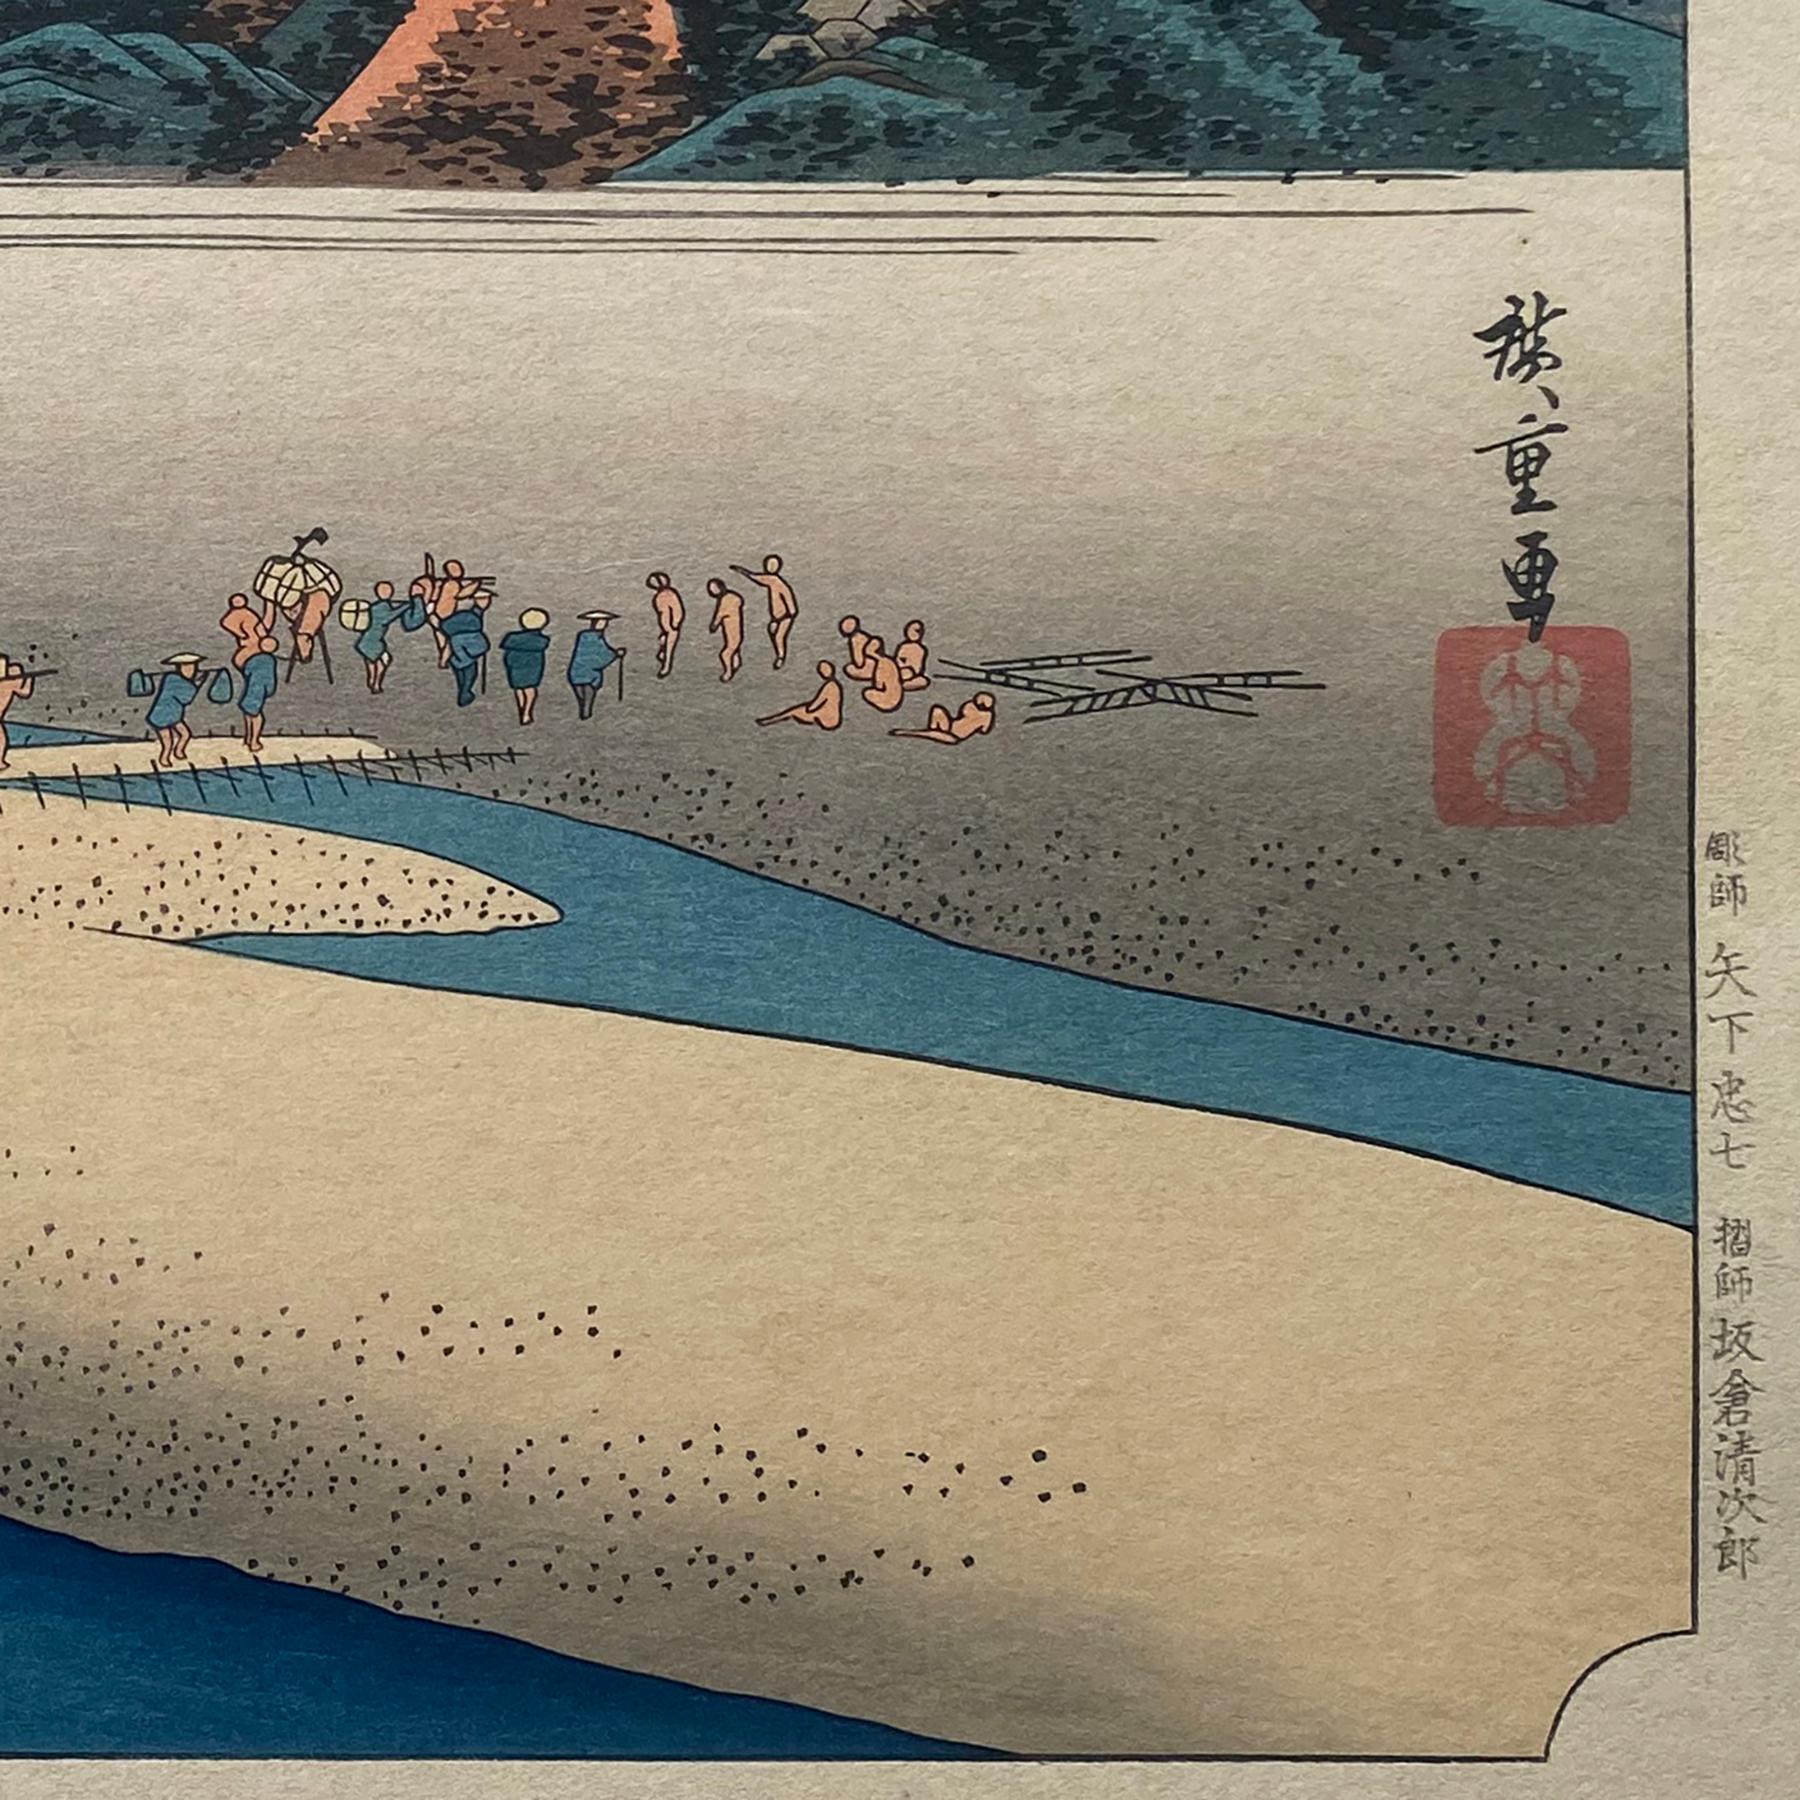 „Anschauung von Kanaya“,  Nach Utagawa Hiroshige 歌川廣重, Ukiyo-e Holzschnitt, Tokaido – Print von Utagawa Hiroshige (Ando Hiroshige)